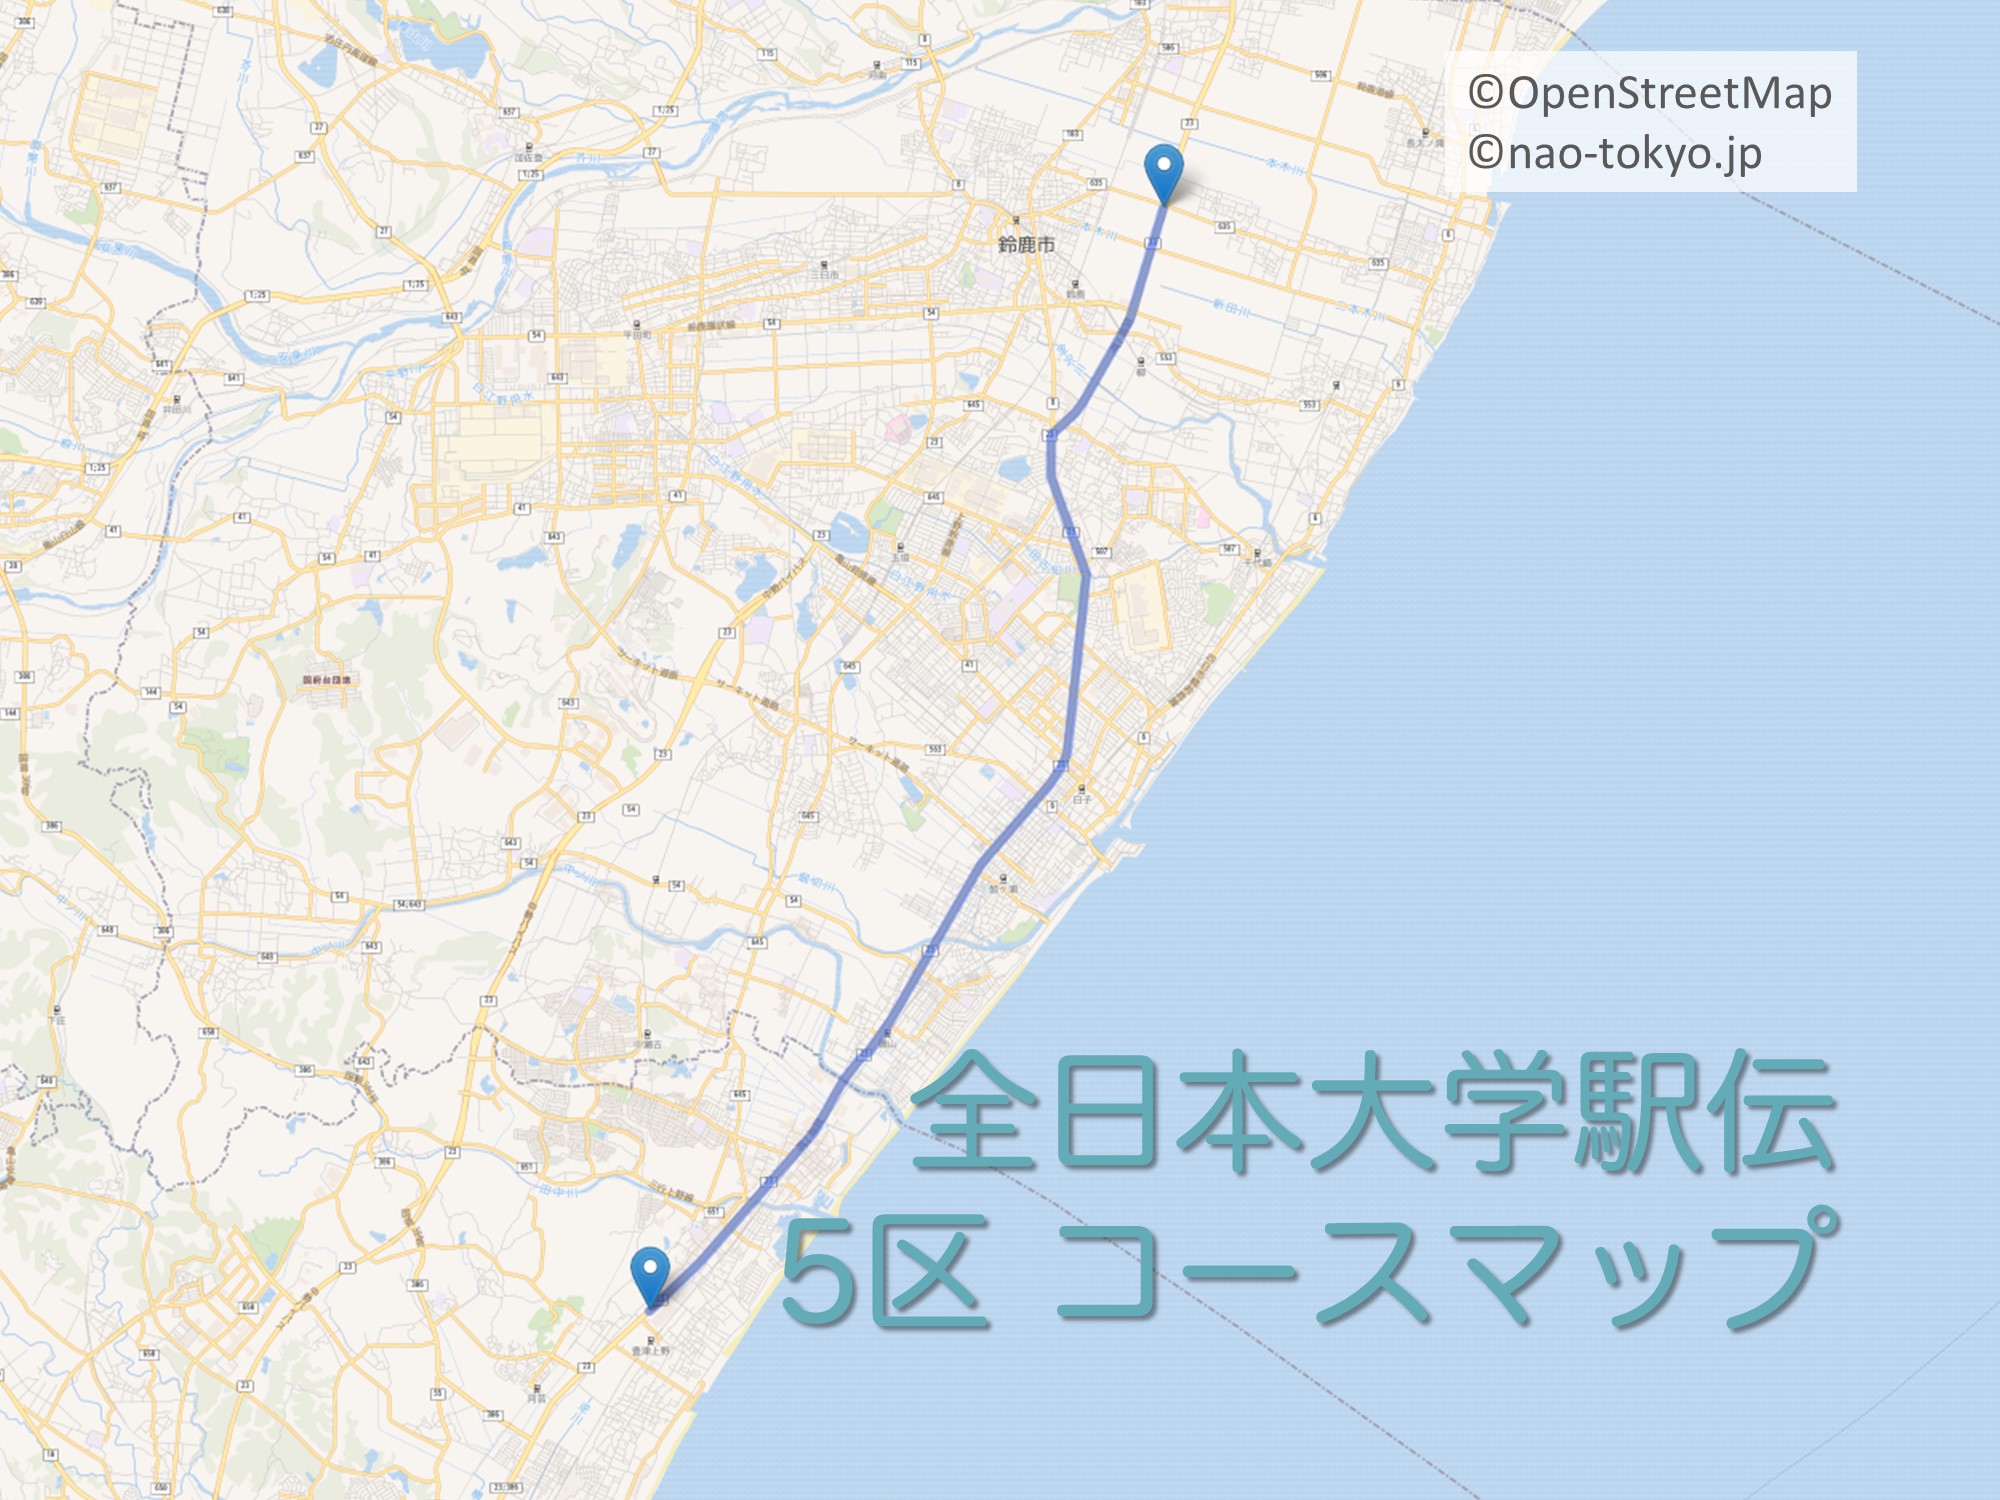 全日本大学駅伝5区のコースをマップで紹介